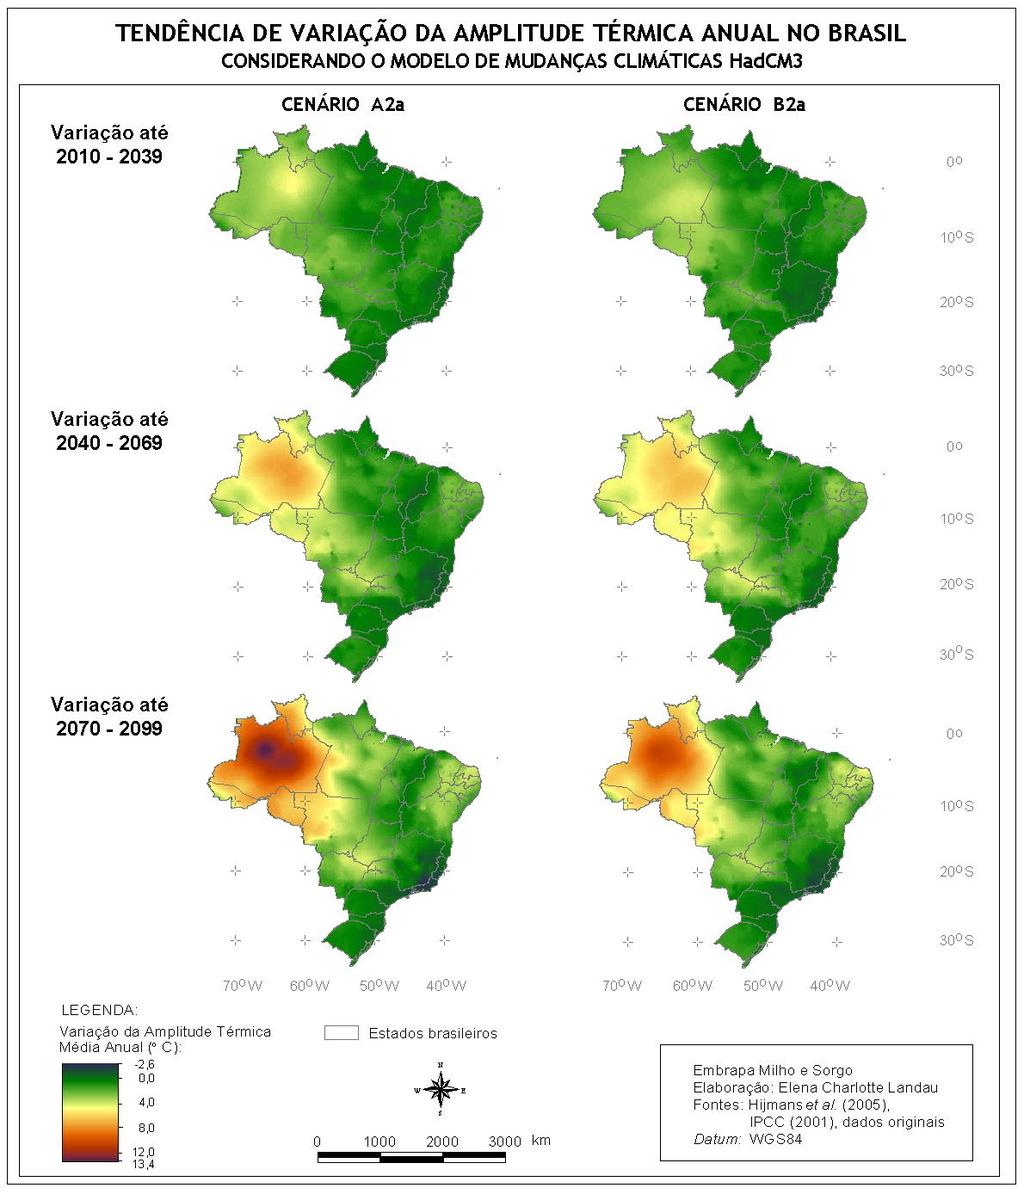 (Figura 2), para a região amazônica, sendo previstos aumentos de até 12,2 o C (A2a) ou 10,5 o C (B2a) até 2070-2099.